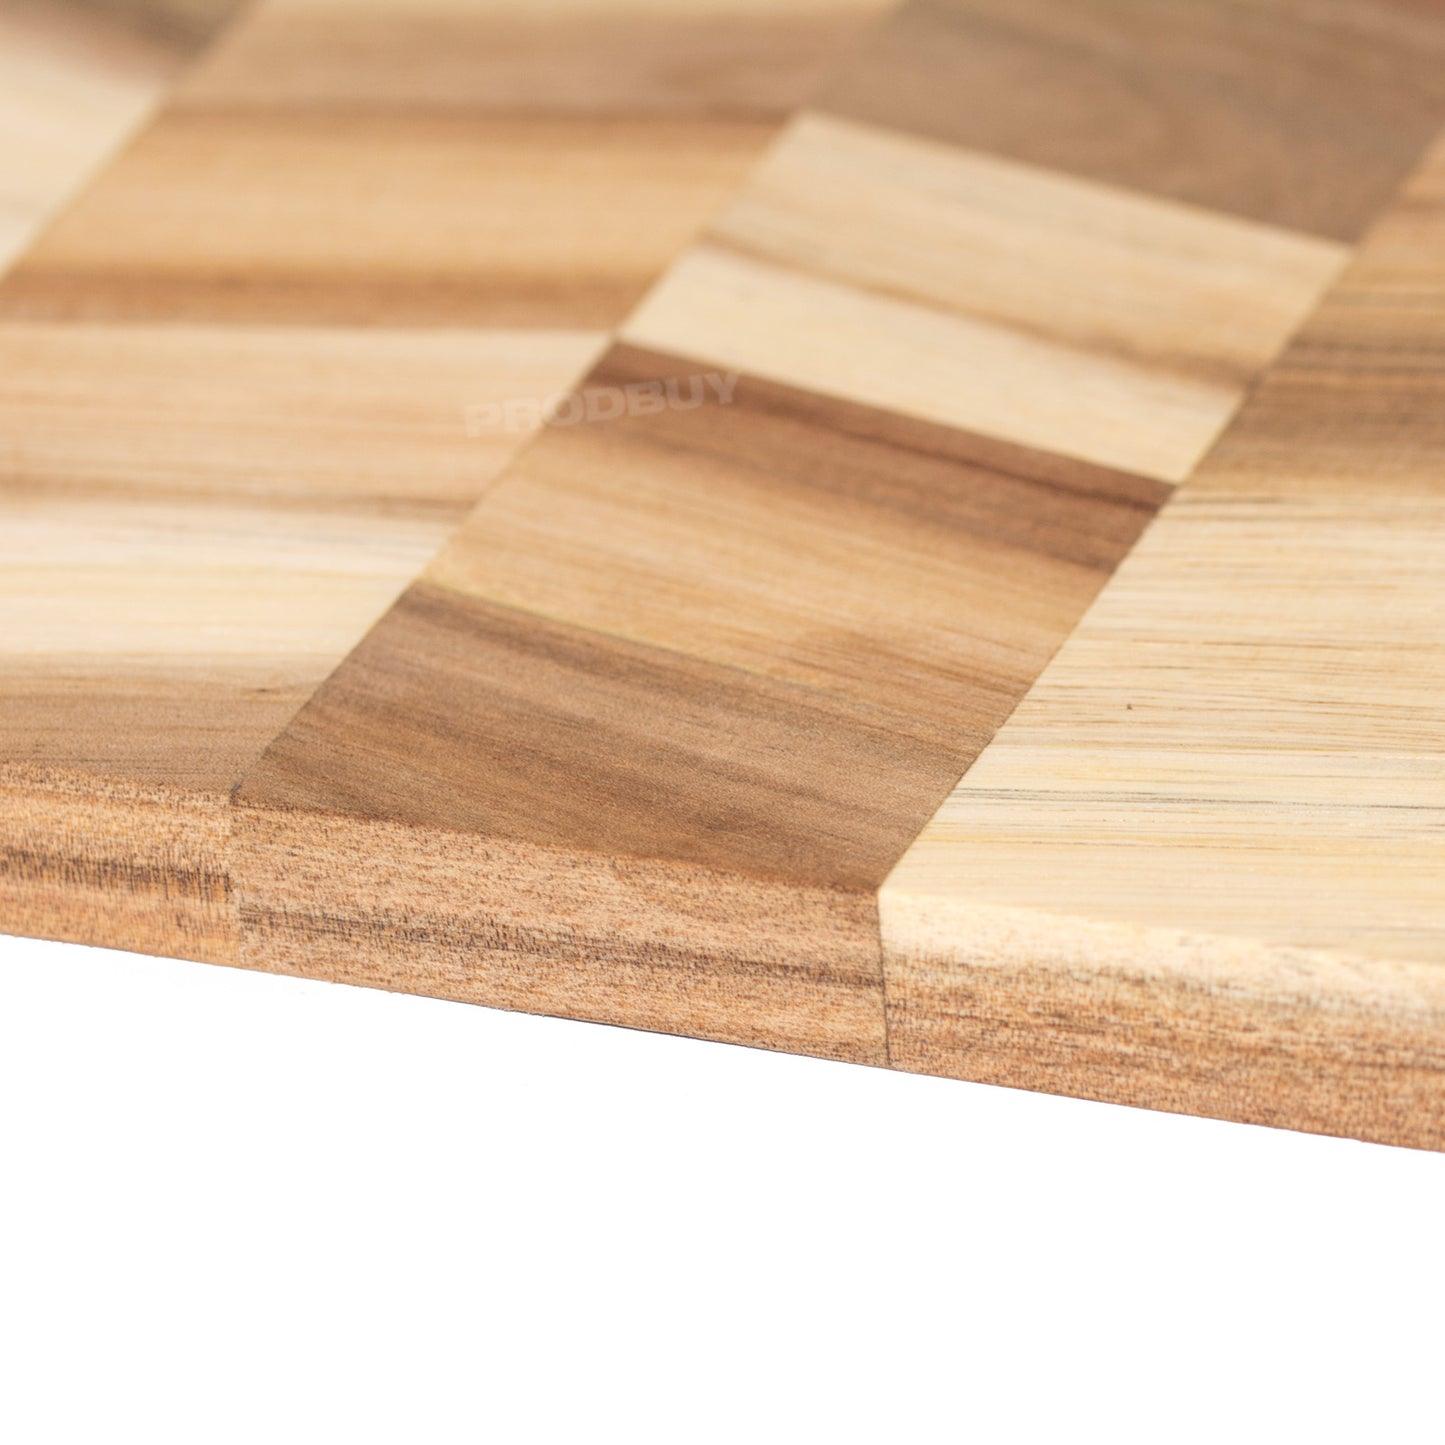 Rectangular 40cm Wooden Chopping Board